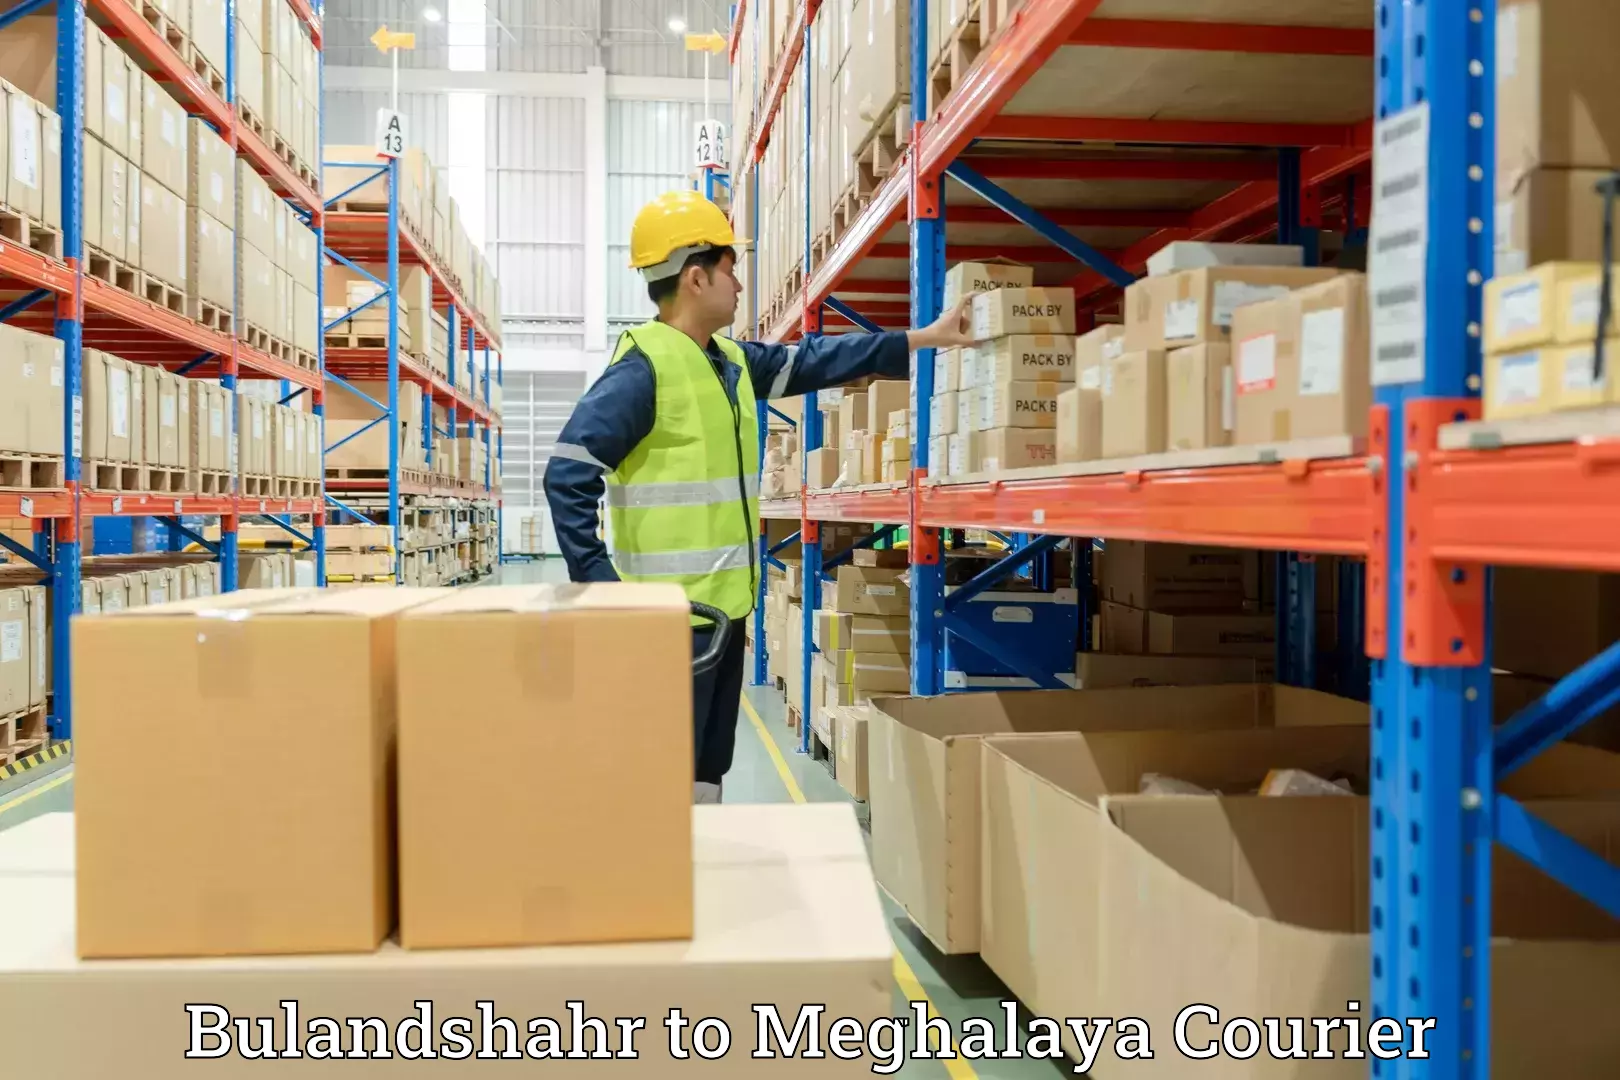 Furniture moving experts Bulandshahr to Meghalaya